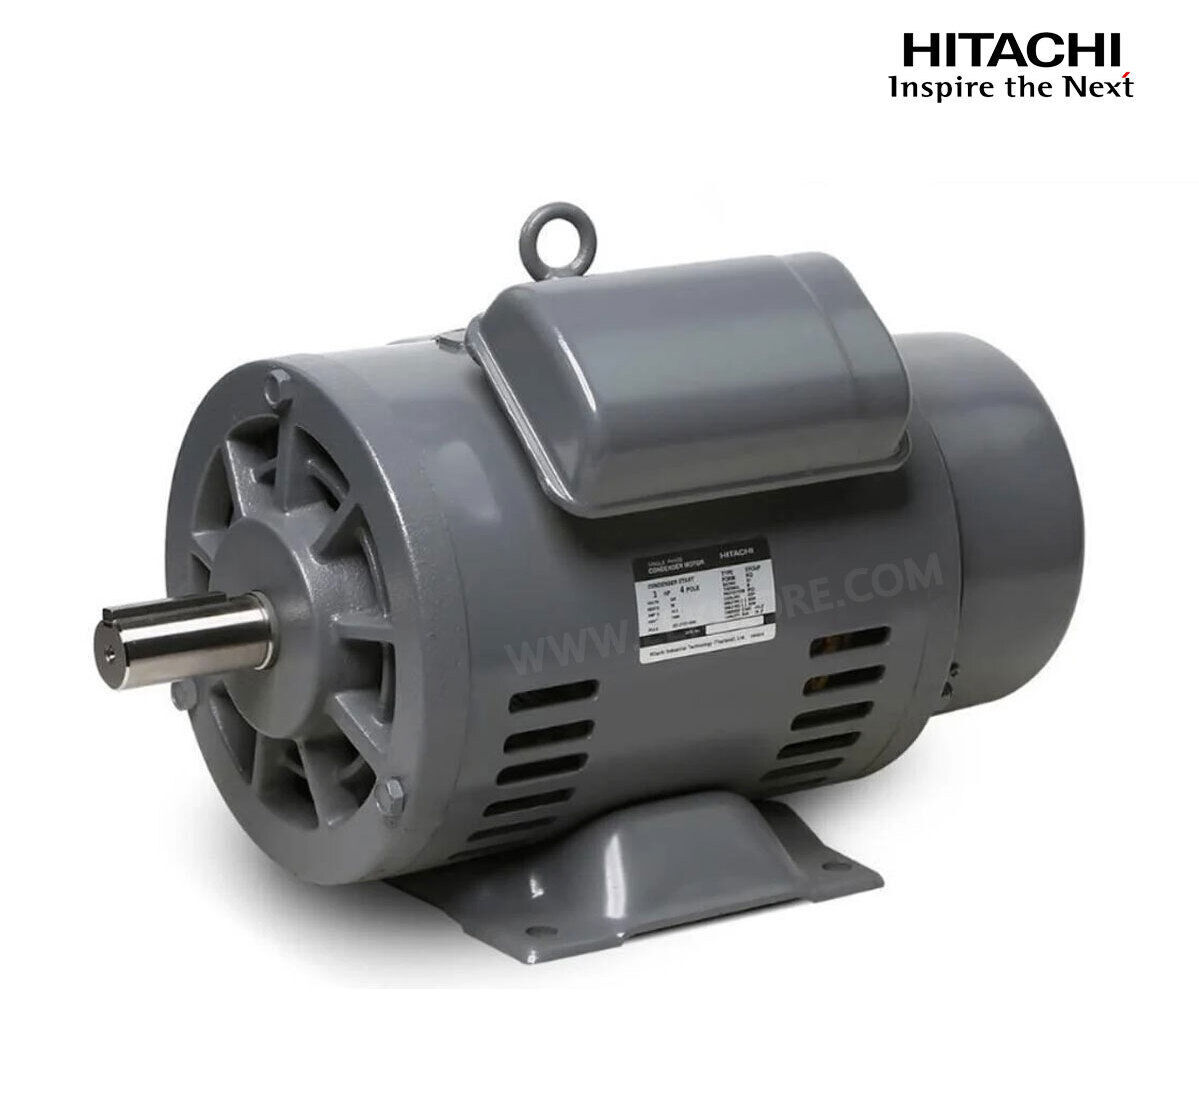 มอเตอร์ฮิตาชิของแท้ 100% HITACHI รุ่น EFOUP-KQ กำลัง 3 แรงม้า (2.2 KW.) กำลังไฟฟ้าที่ใช้ 220V ความเร็วรอบตัวเปล่า 1450 RPM แกนเพลามอเตอร์ 28 MM.รับประกัน 3 ปี มีของพร้อมจัดส่งทุกวัน